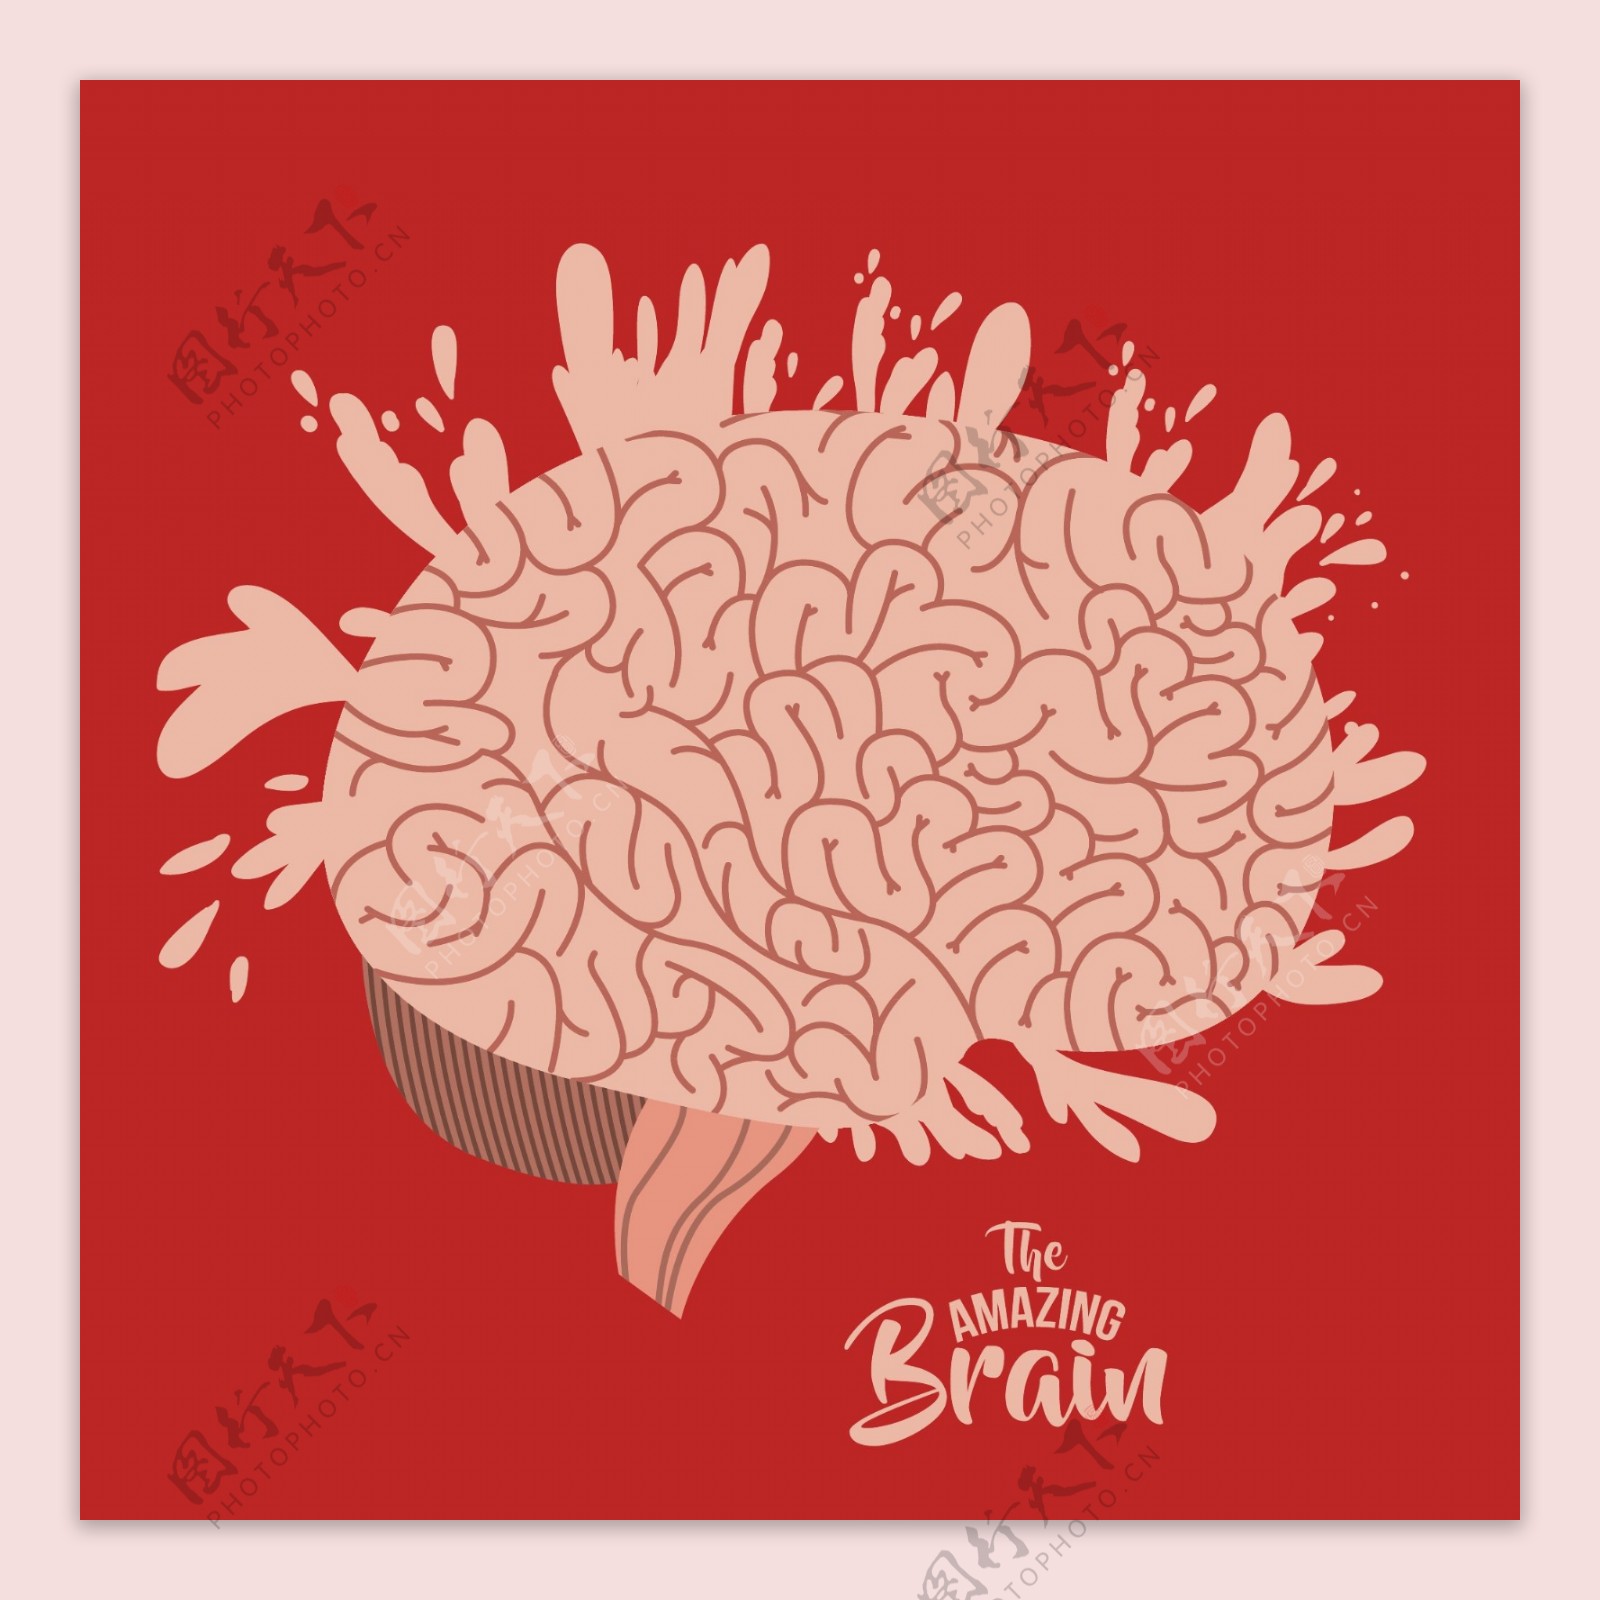 创意的大脑图案设计